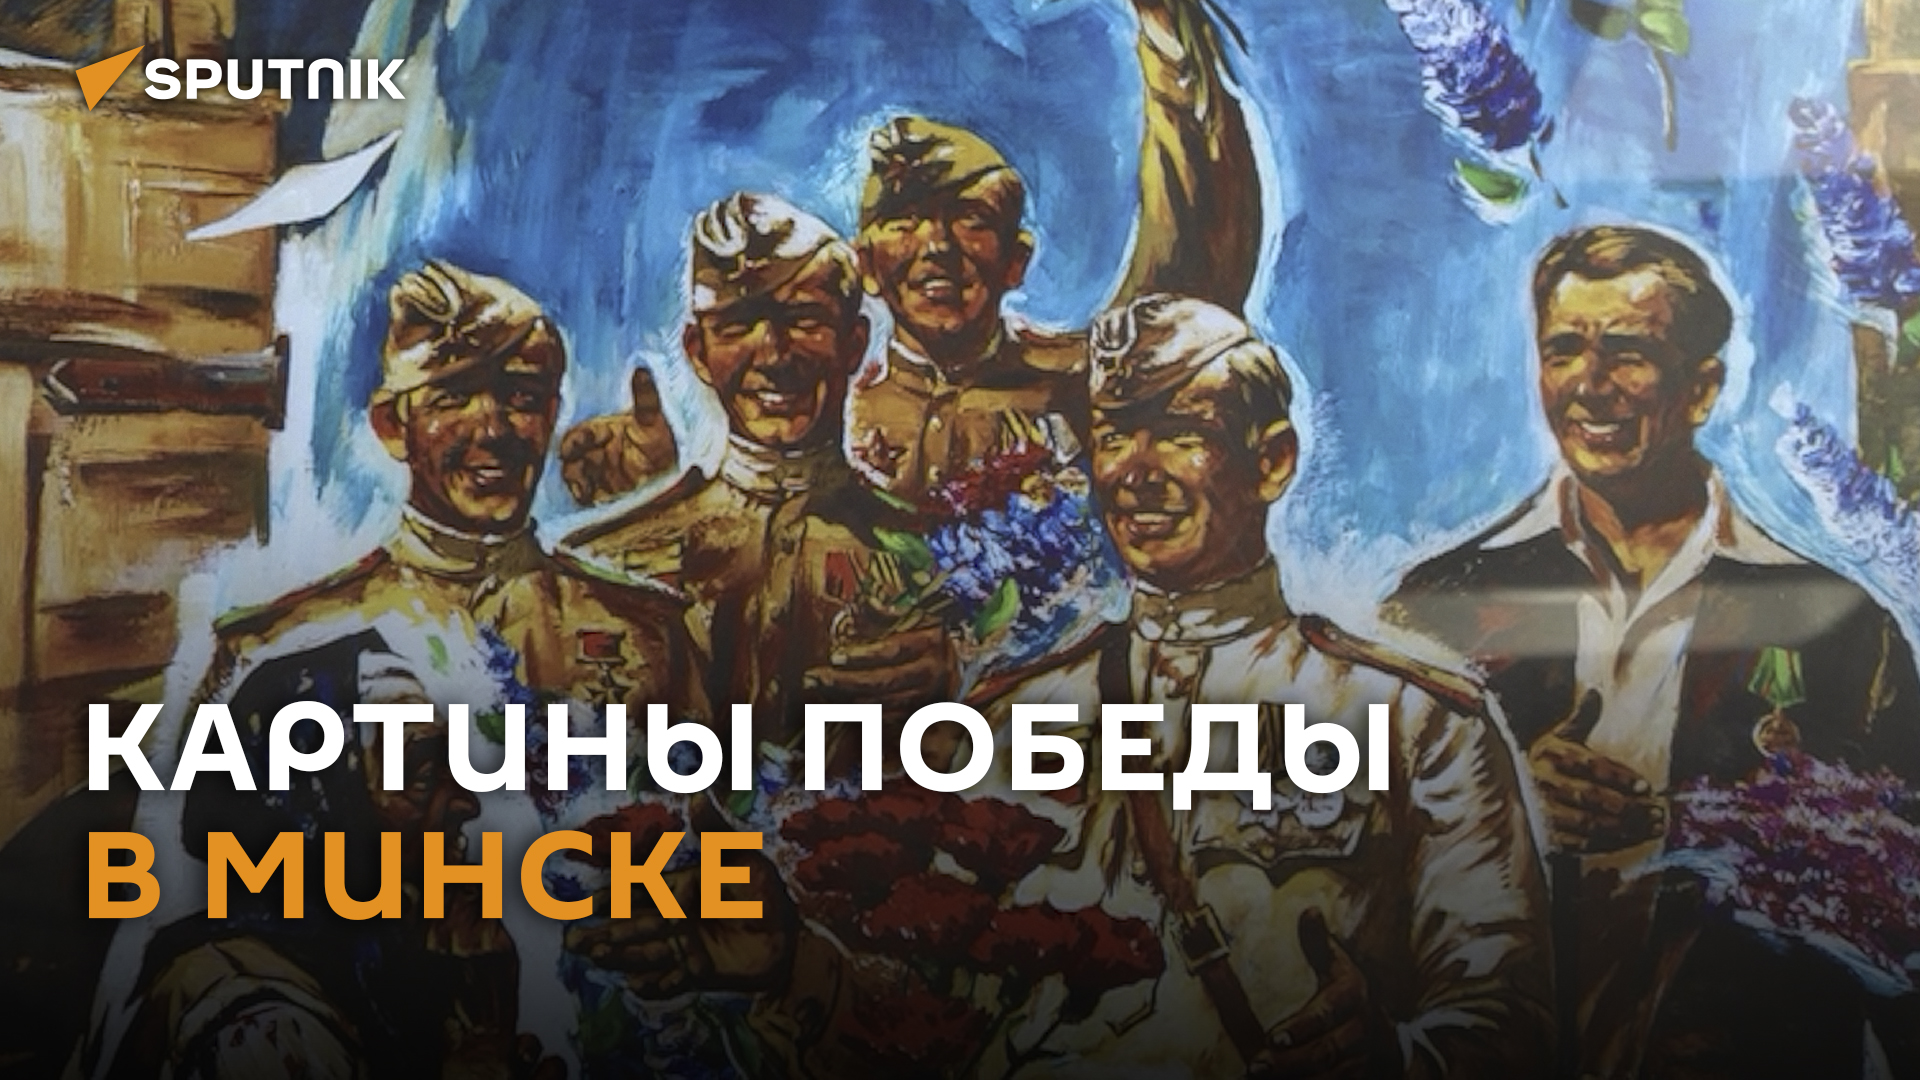 Картины Победы: 15 репродукций с QR-кодами представлены в Минске